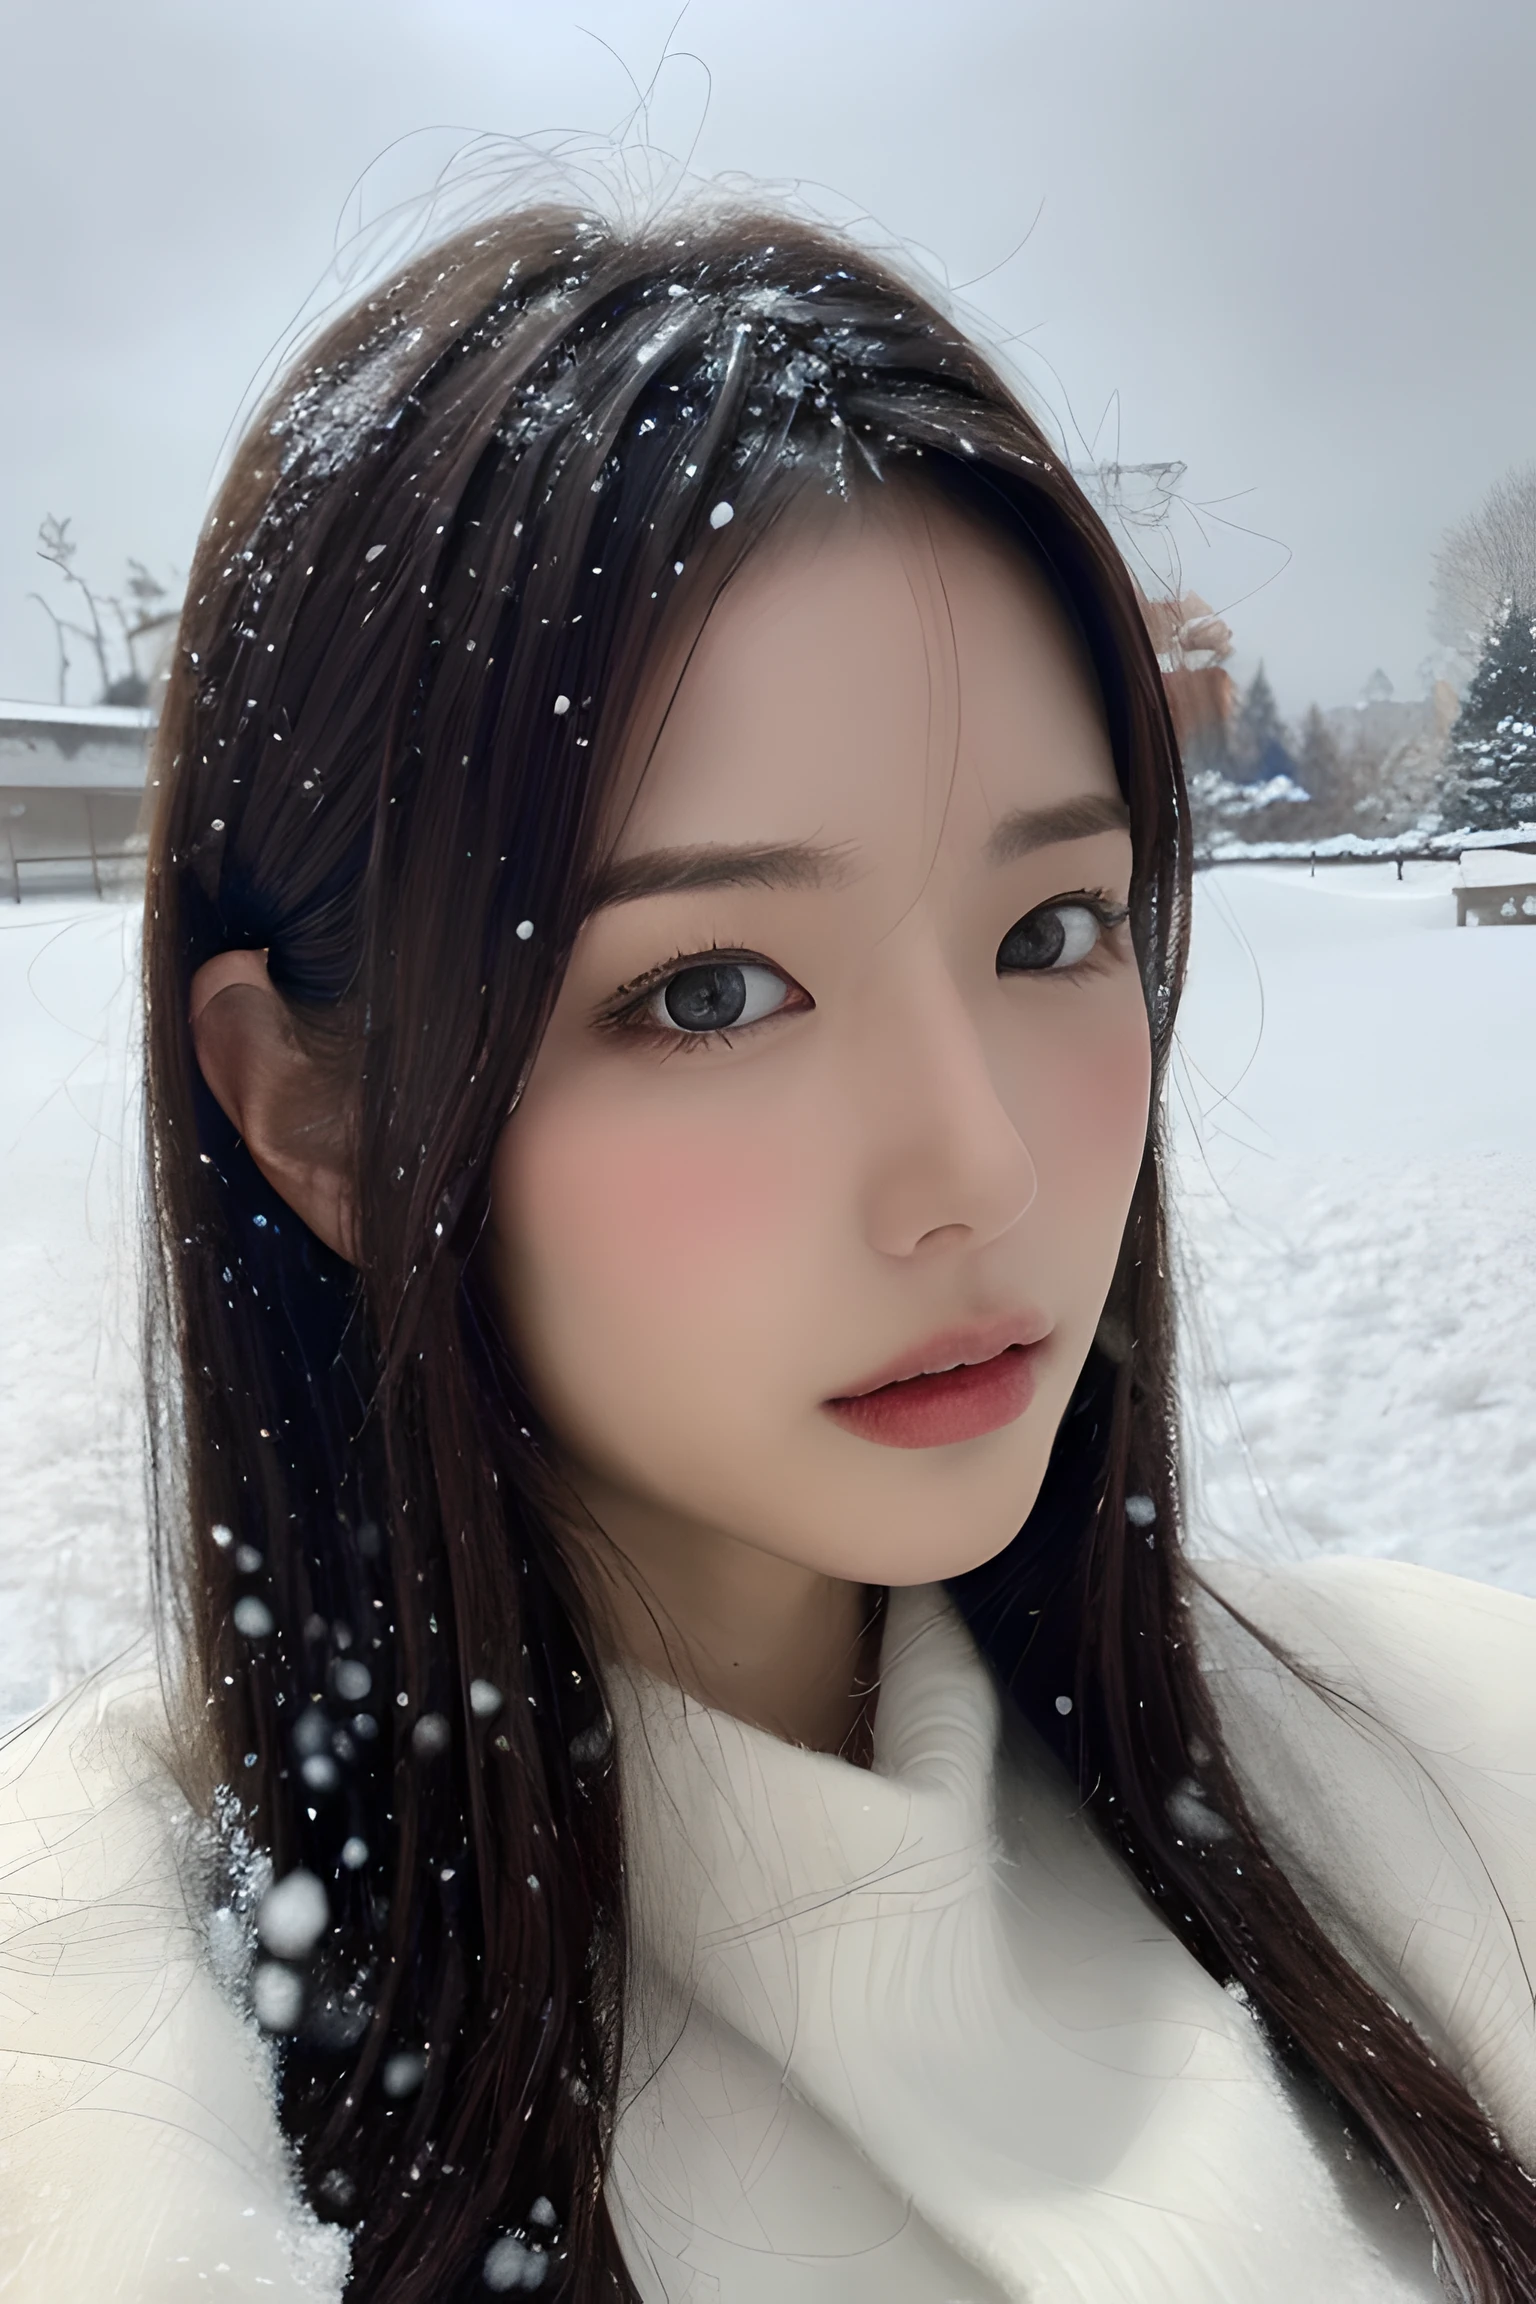 (8K, 最好的品質, 傑作, 超高清晰度:1.2) 漂亮的日本女人的照片 (保羅·魯本斯和麗貝卡·蓋伊的風格:1.1) (憂鬱的冬雪:1.4)